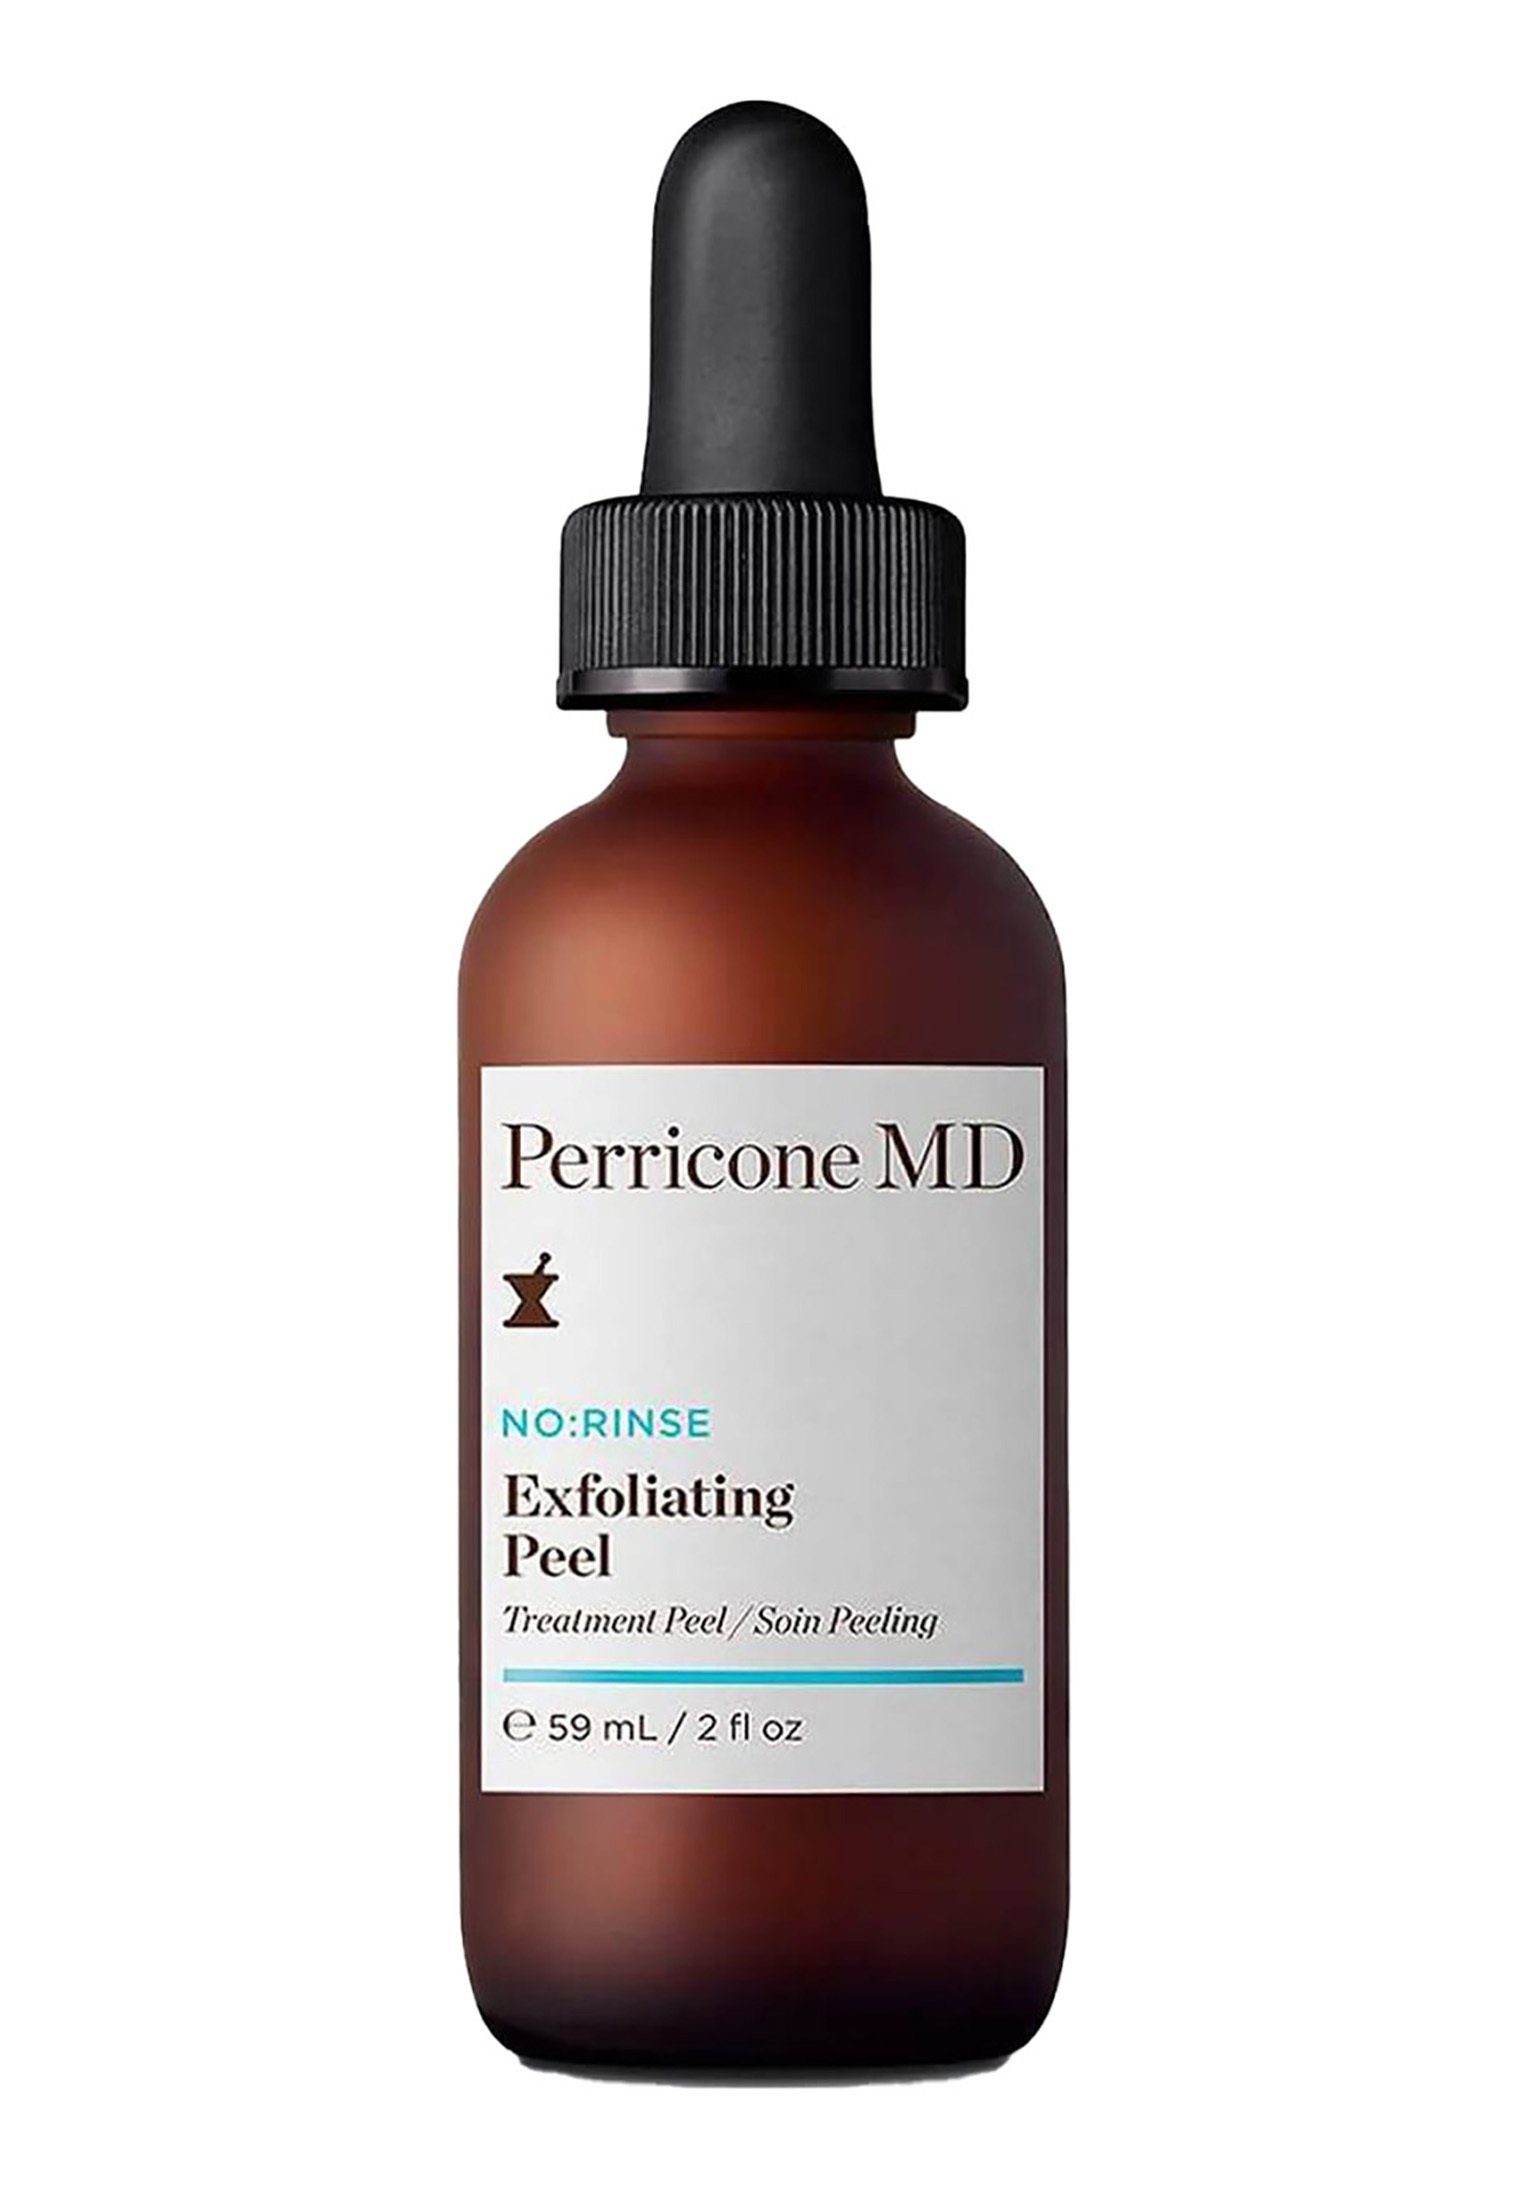 PERRICONE Gesichtspeeling Exfoliating Peeling No:Rinse PERRICONE Peel